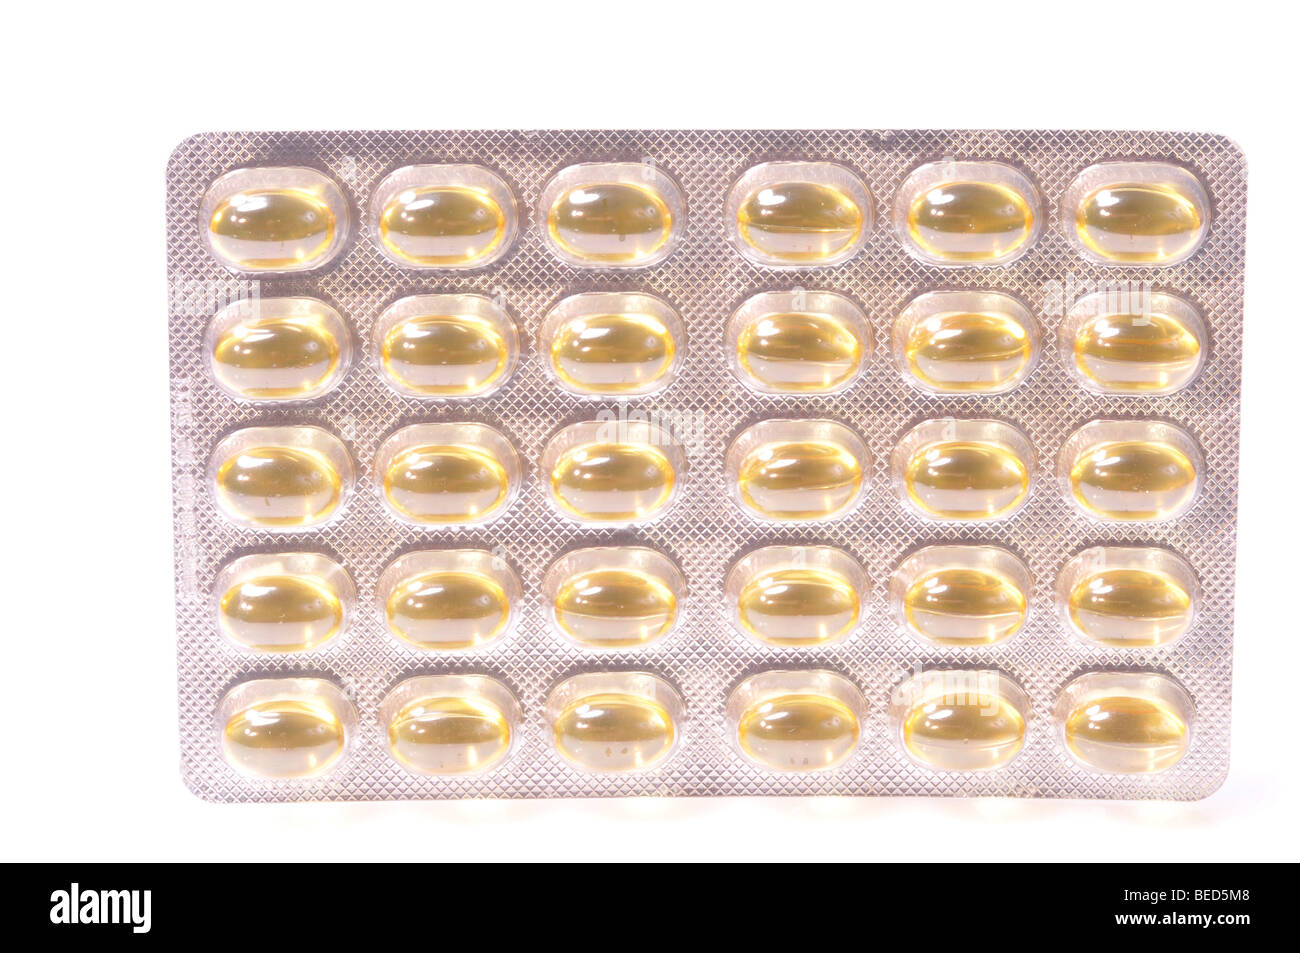 Medicine capsules Stock Photo